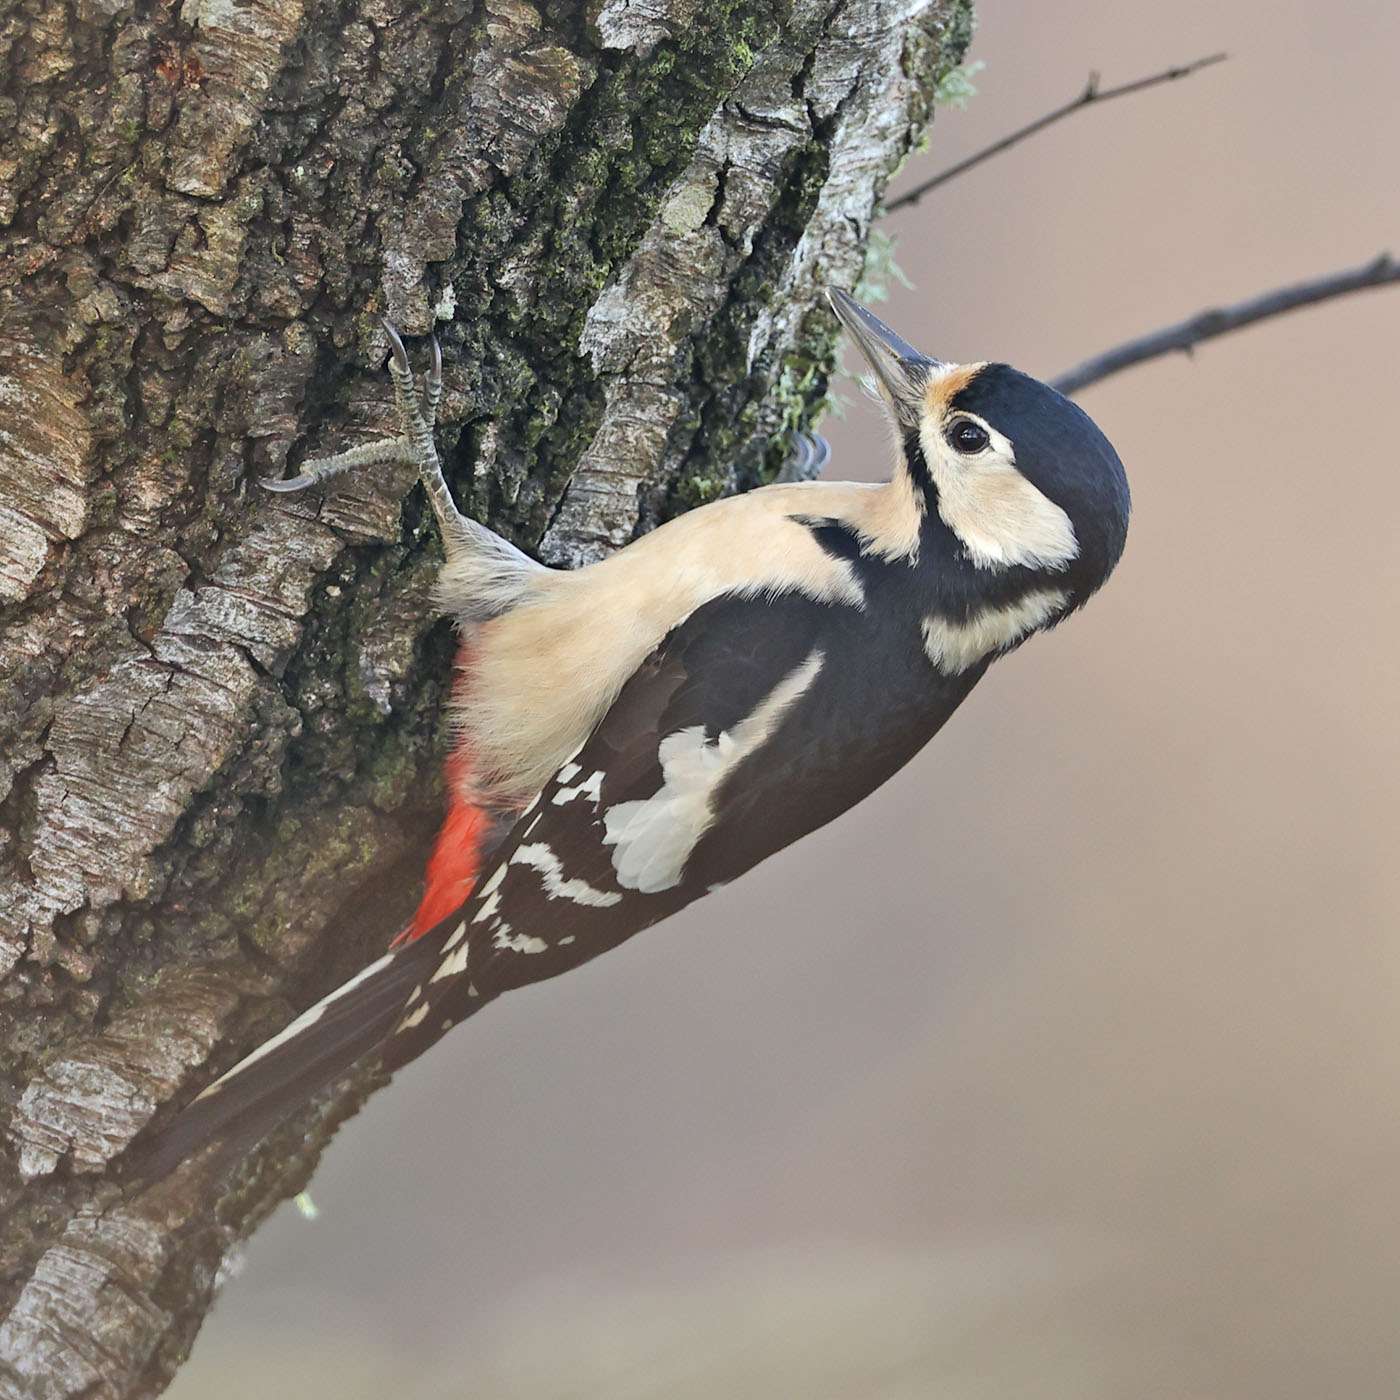 Great Spotted Woodpecker by Steve Hopper at Haldon